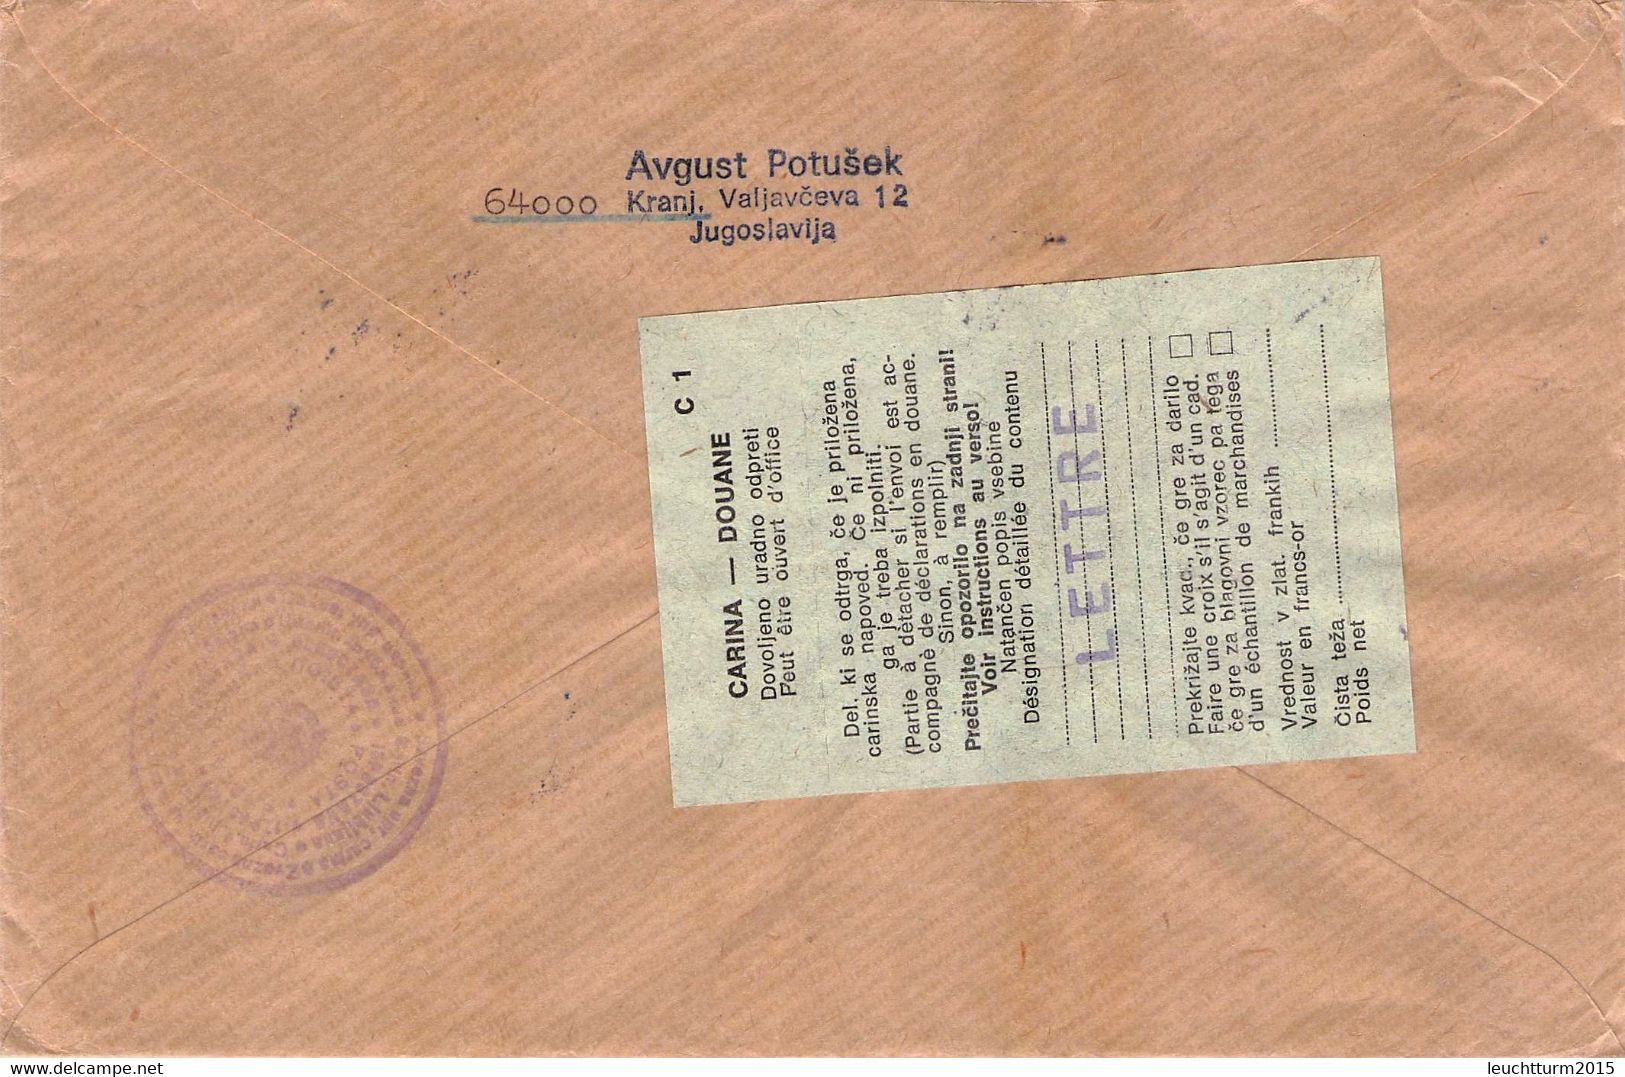 JUGOSLAVIJA - REGISTERED MAIL 1976 LJUBLJANA > ROSITZ/DDR / ZL316 - Covers & Documents